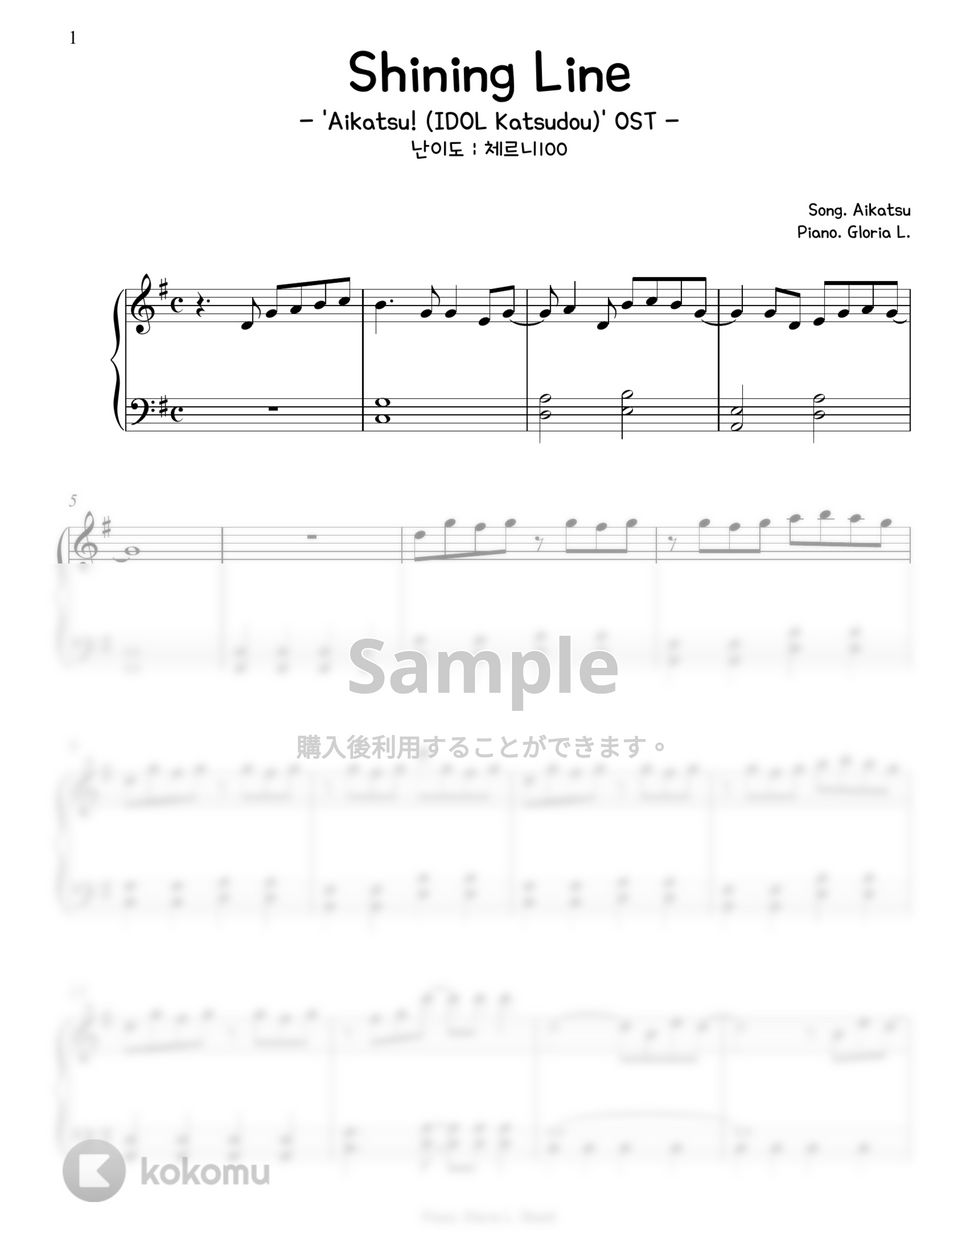 アイカツ - Shining Line ('Aikatsu! -IDOL Katsudou-' OST) (難易度チェルニー100) by Gloria L.